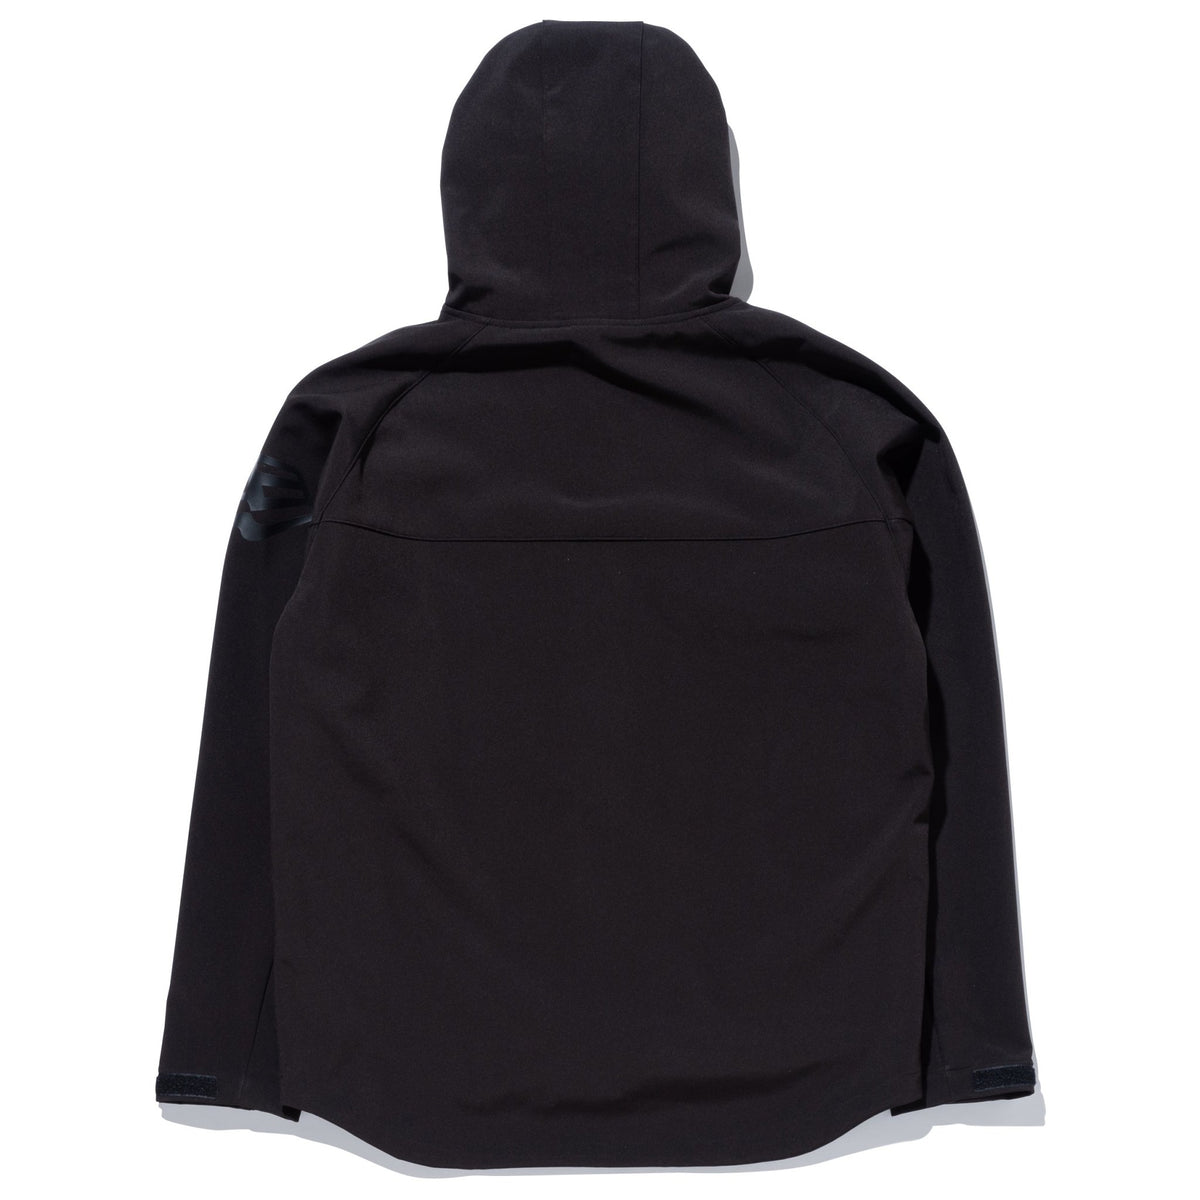 シェルジャケット フラッグロゴ ブラック 【 Performance Apparel 】 ニューエラオンラインストア